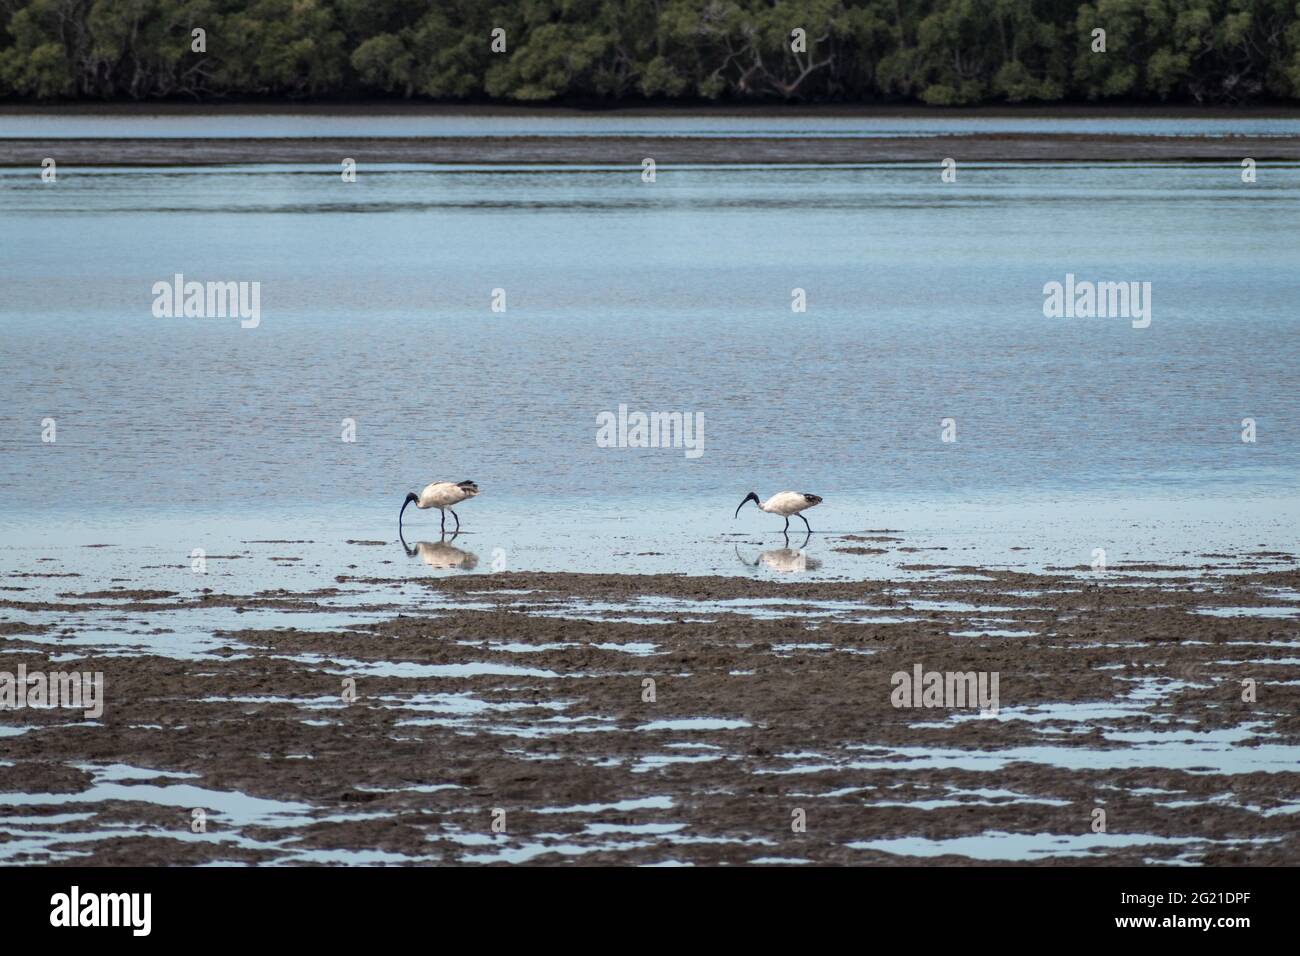 Dos Ibises Blancos Australianos (Threskiornis molucca) se alimentan de la marea baja en las marismas de Pumicestone Passage, Brisbane, Queensland, Australia Foto de stock